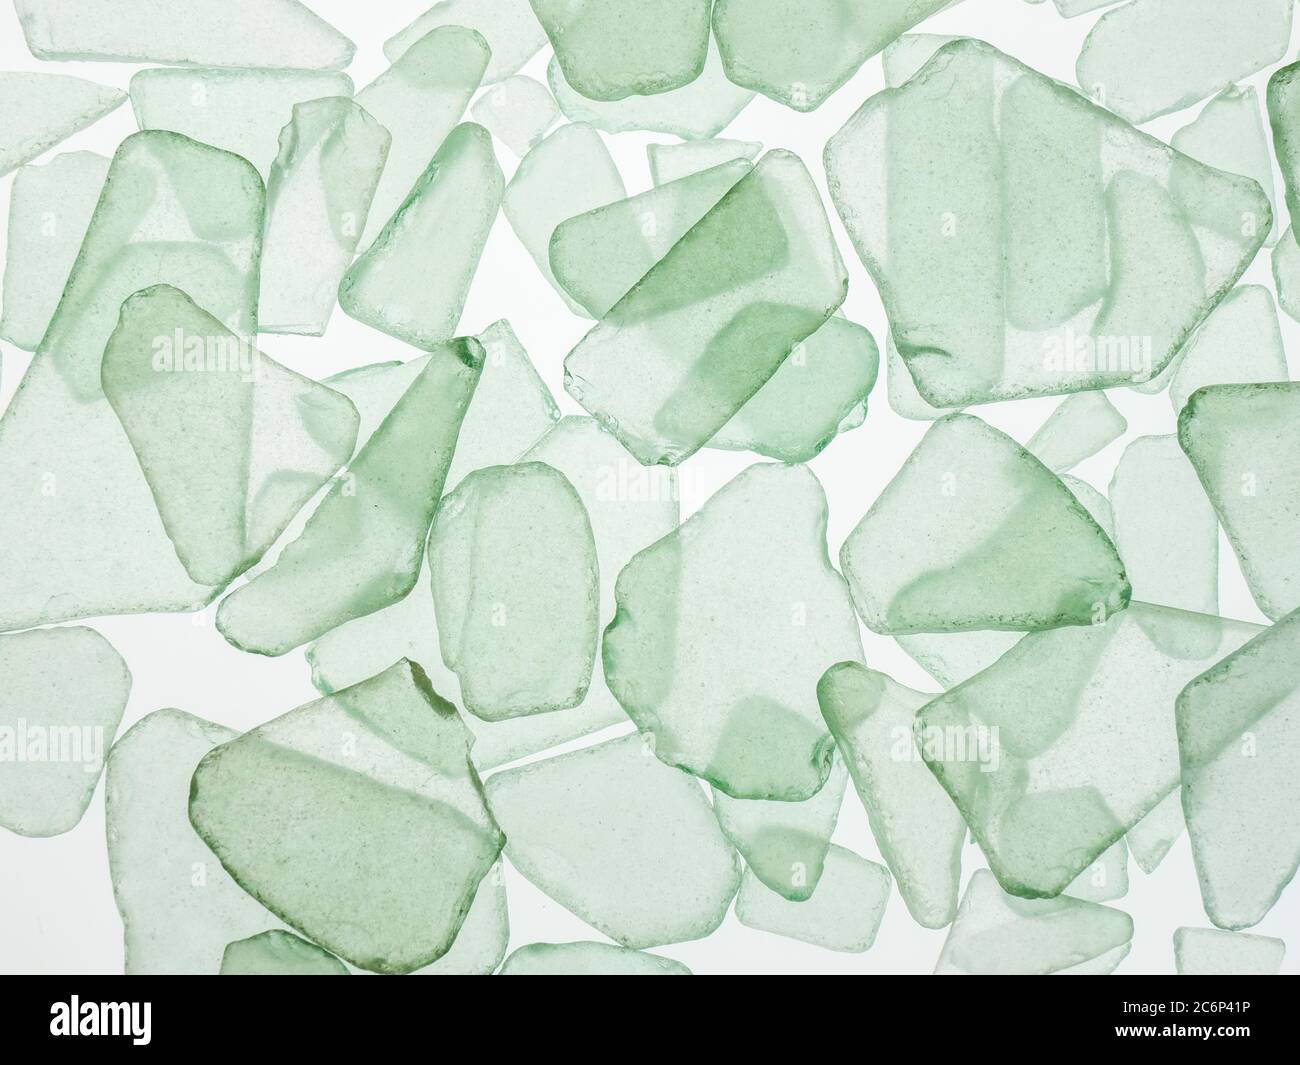 Cadre de remplissage en gros plan de copeaux de verre vert clair ou bleu turquoise translucide sur fond blanc Banque D'Images